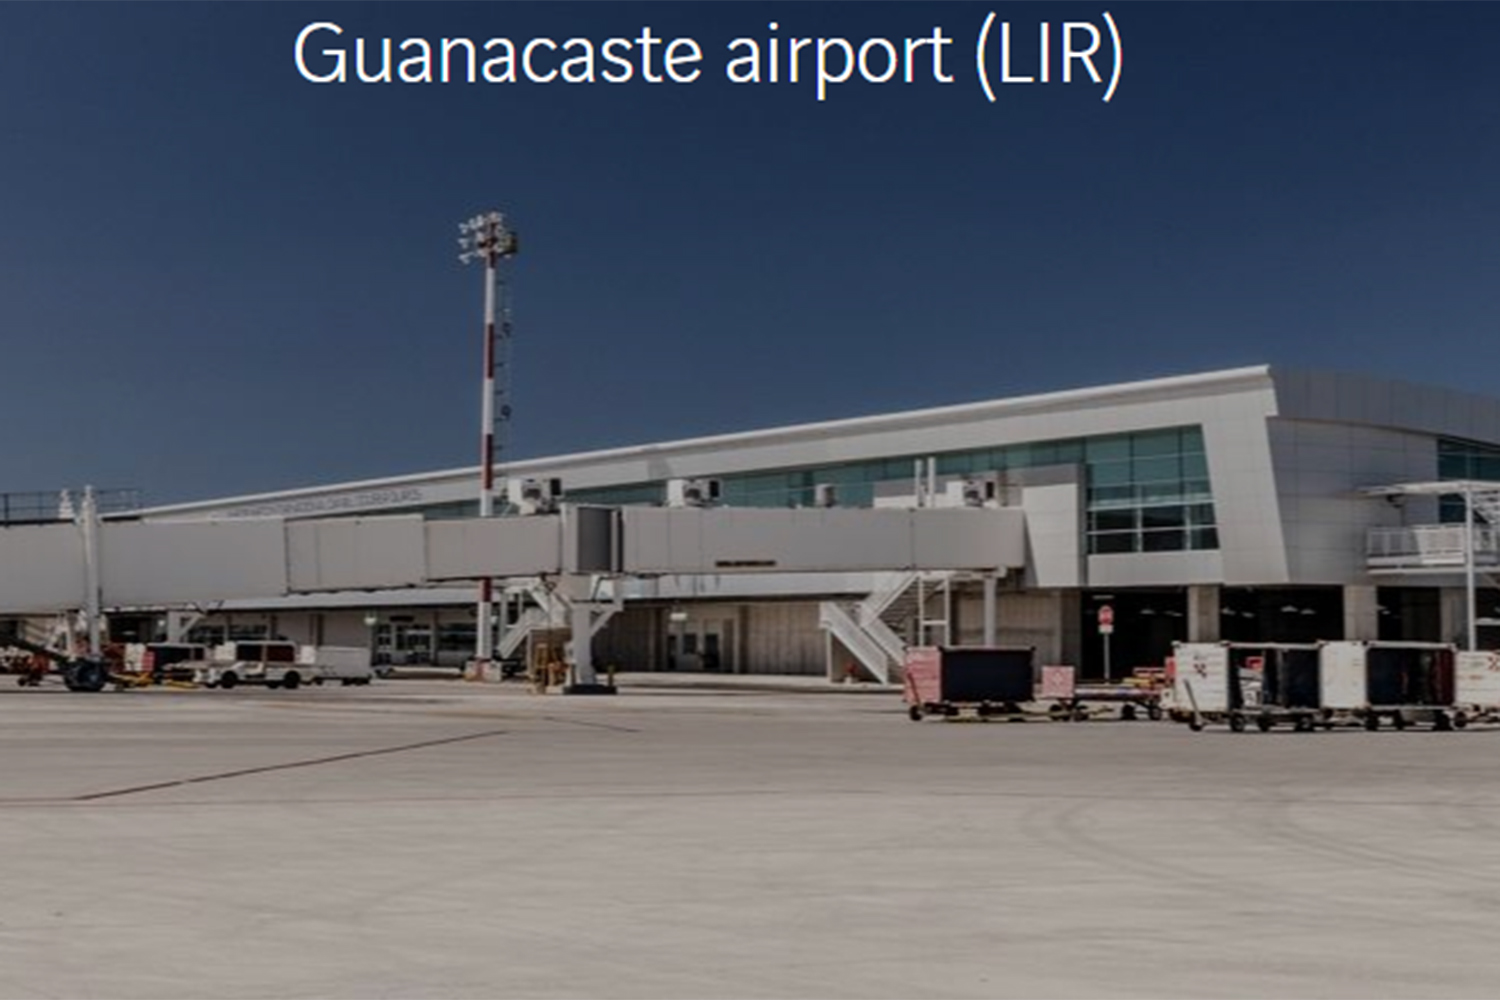 seguridad aeroportuaria Aeropuerto de Guanacaste Liberia Costa Rica